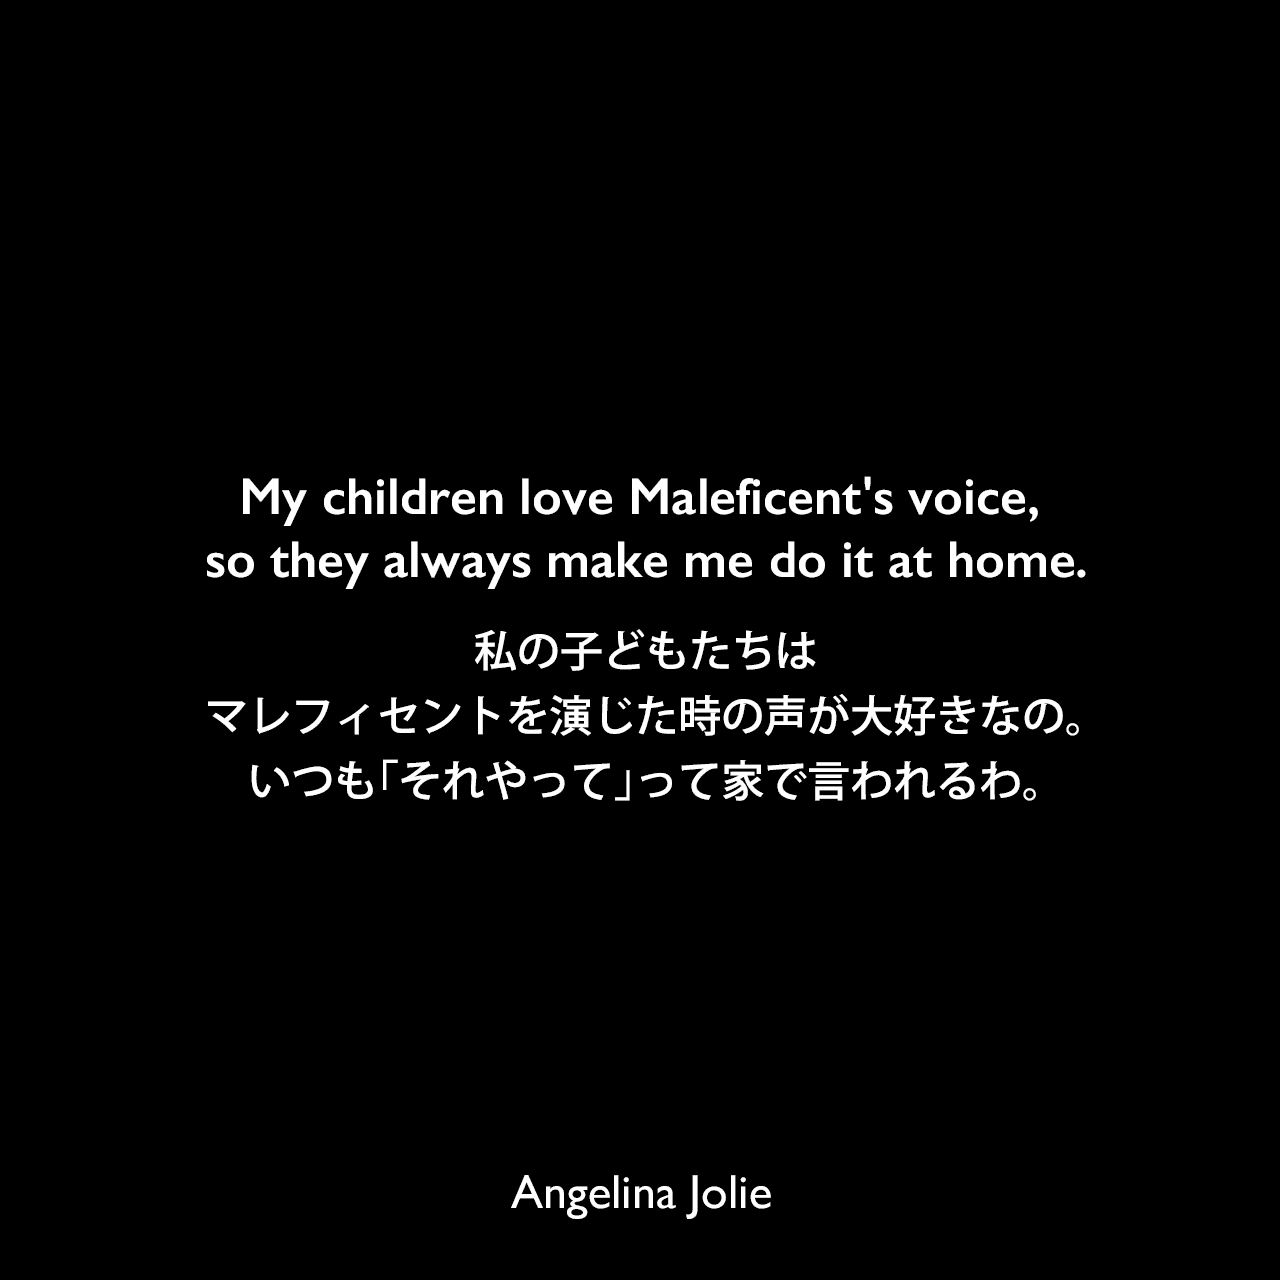 My children love Maleficent's voice, so they always make me do it at home.私の子どもたちは、マレフィセントを演じた時の声が大好きなの。いつも「それやって」って家で言われるわ。Angelina Jolie